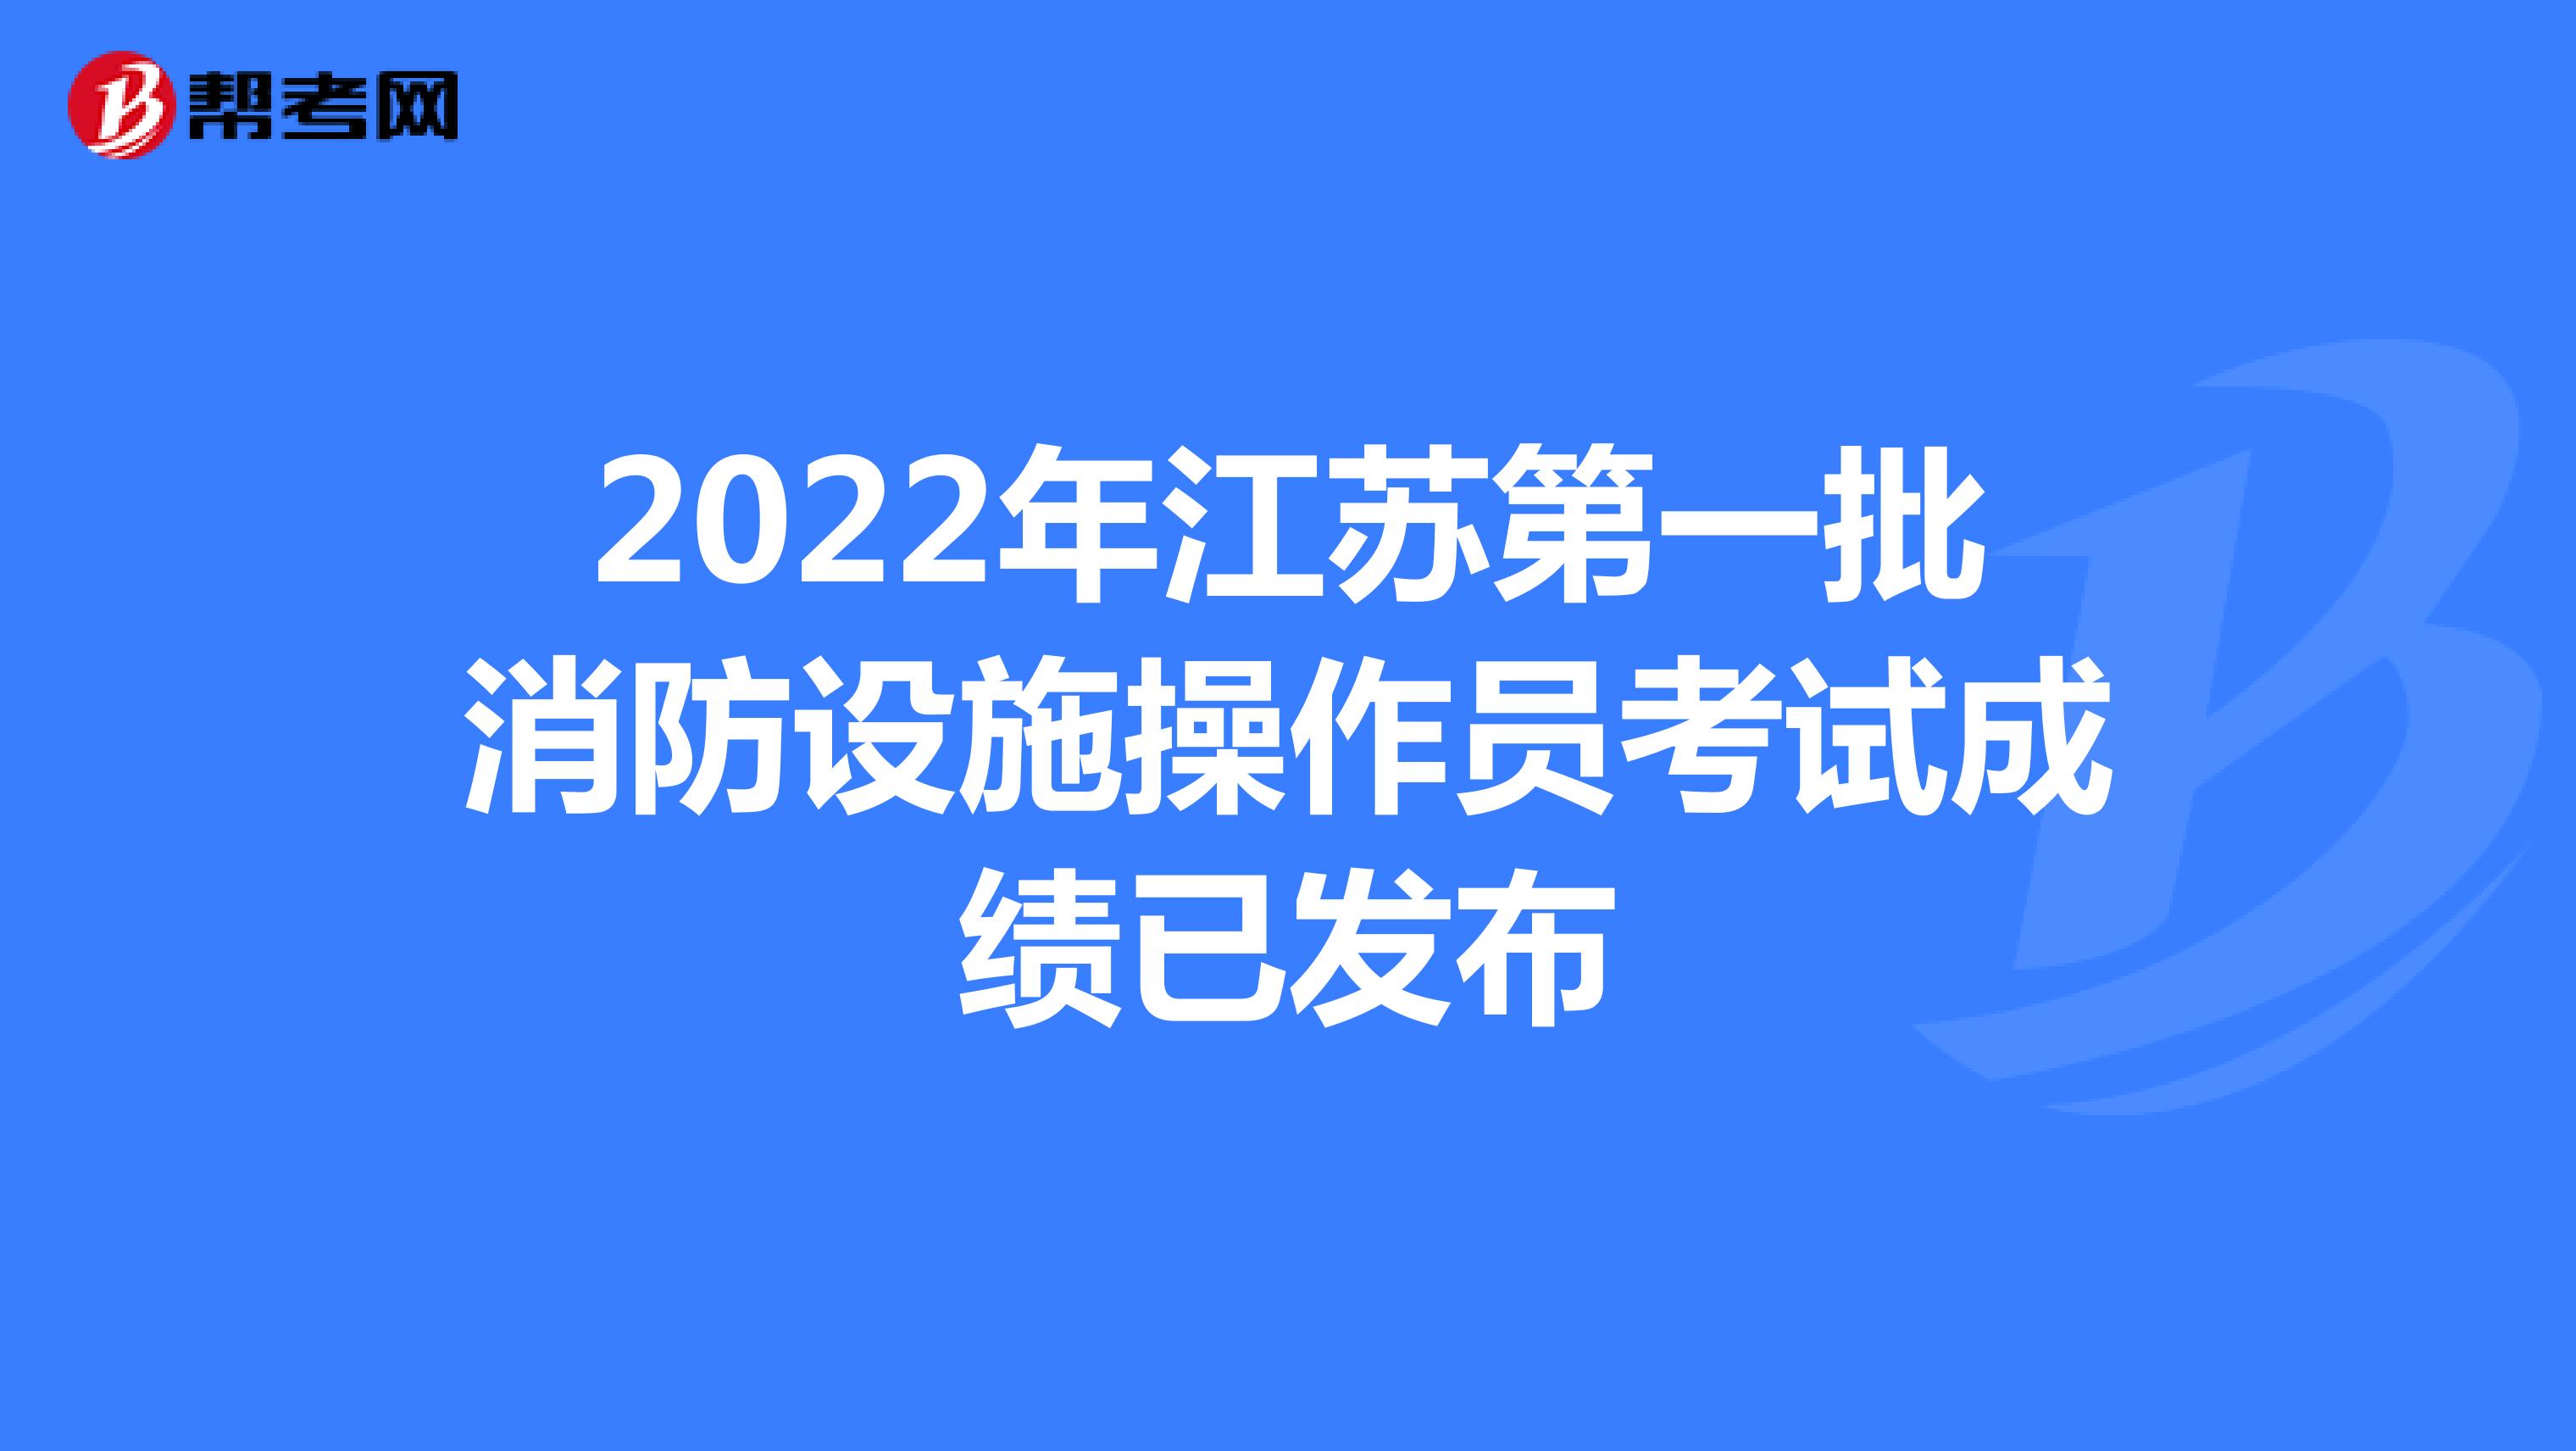 2022年江苏第一批消防设施操作员考试成绩已发布